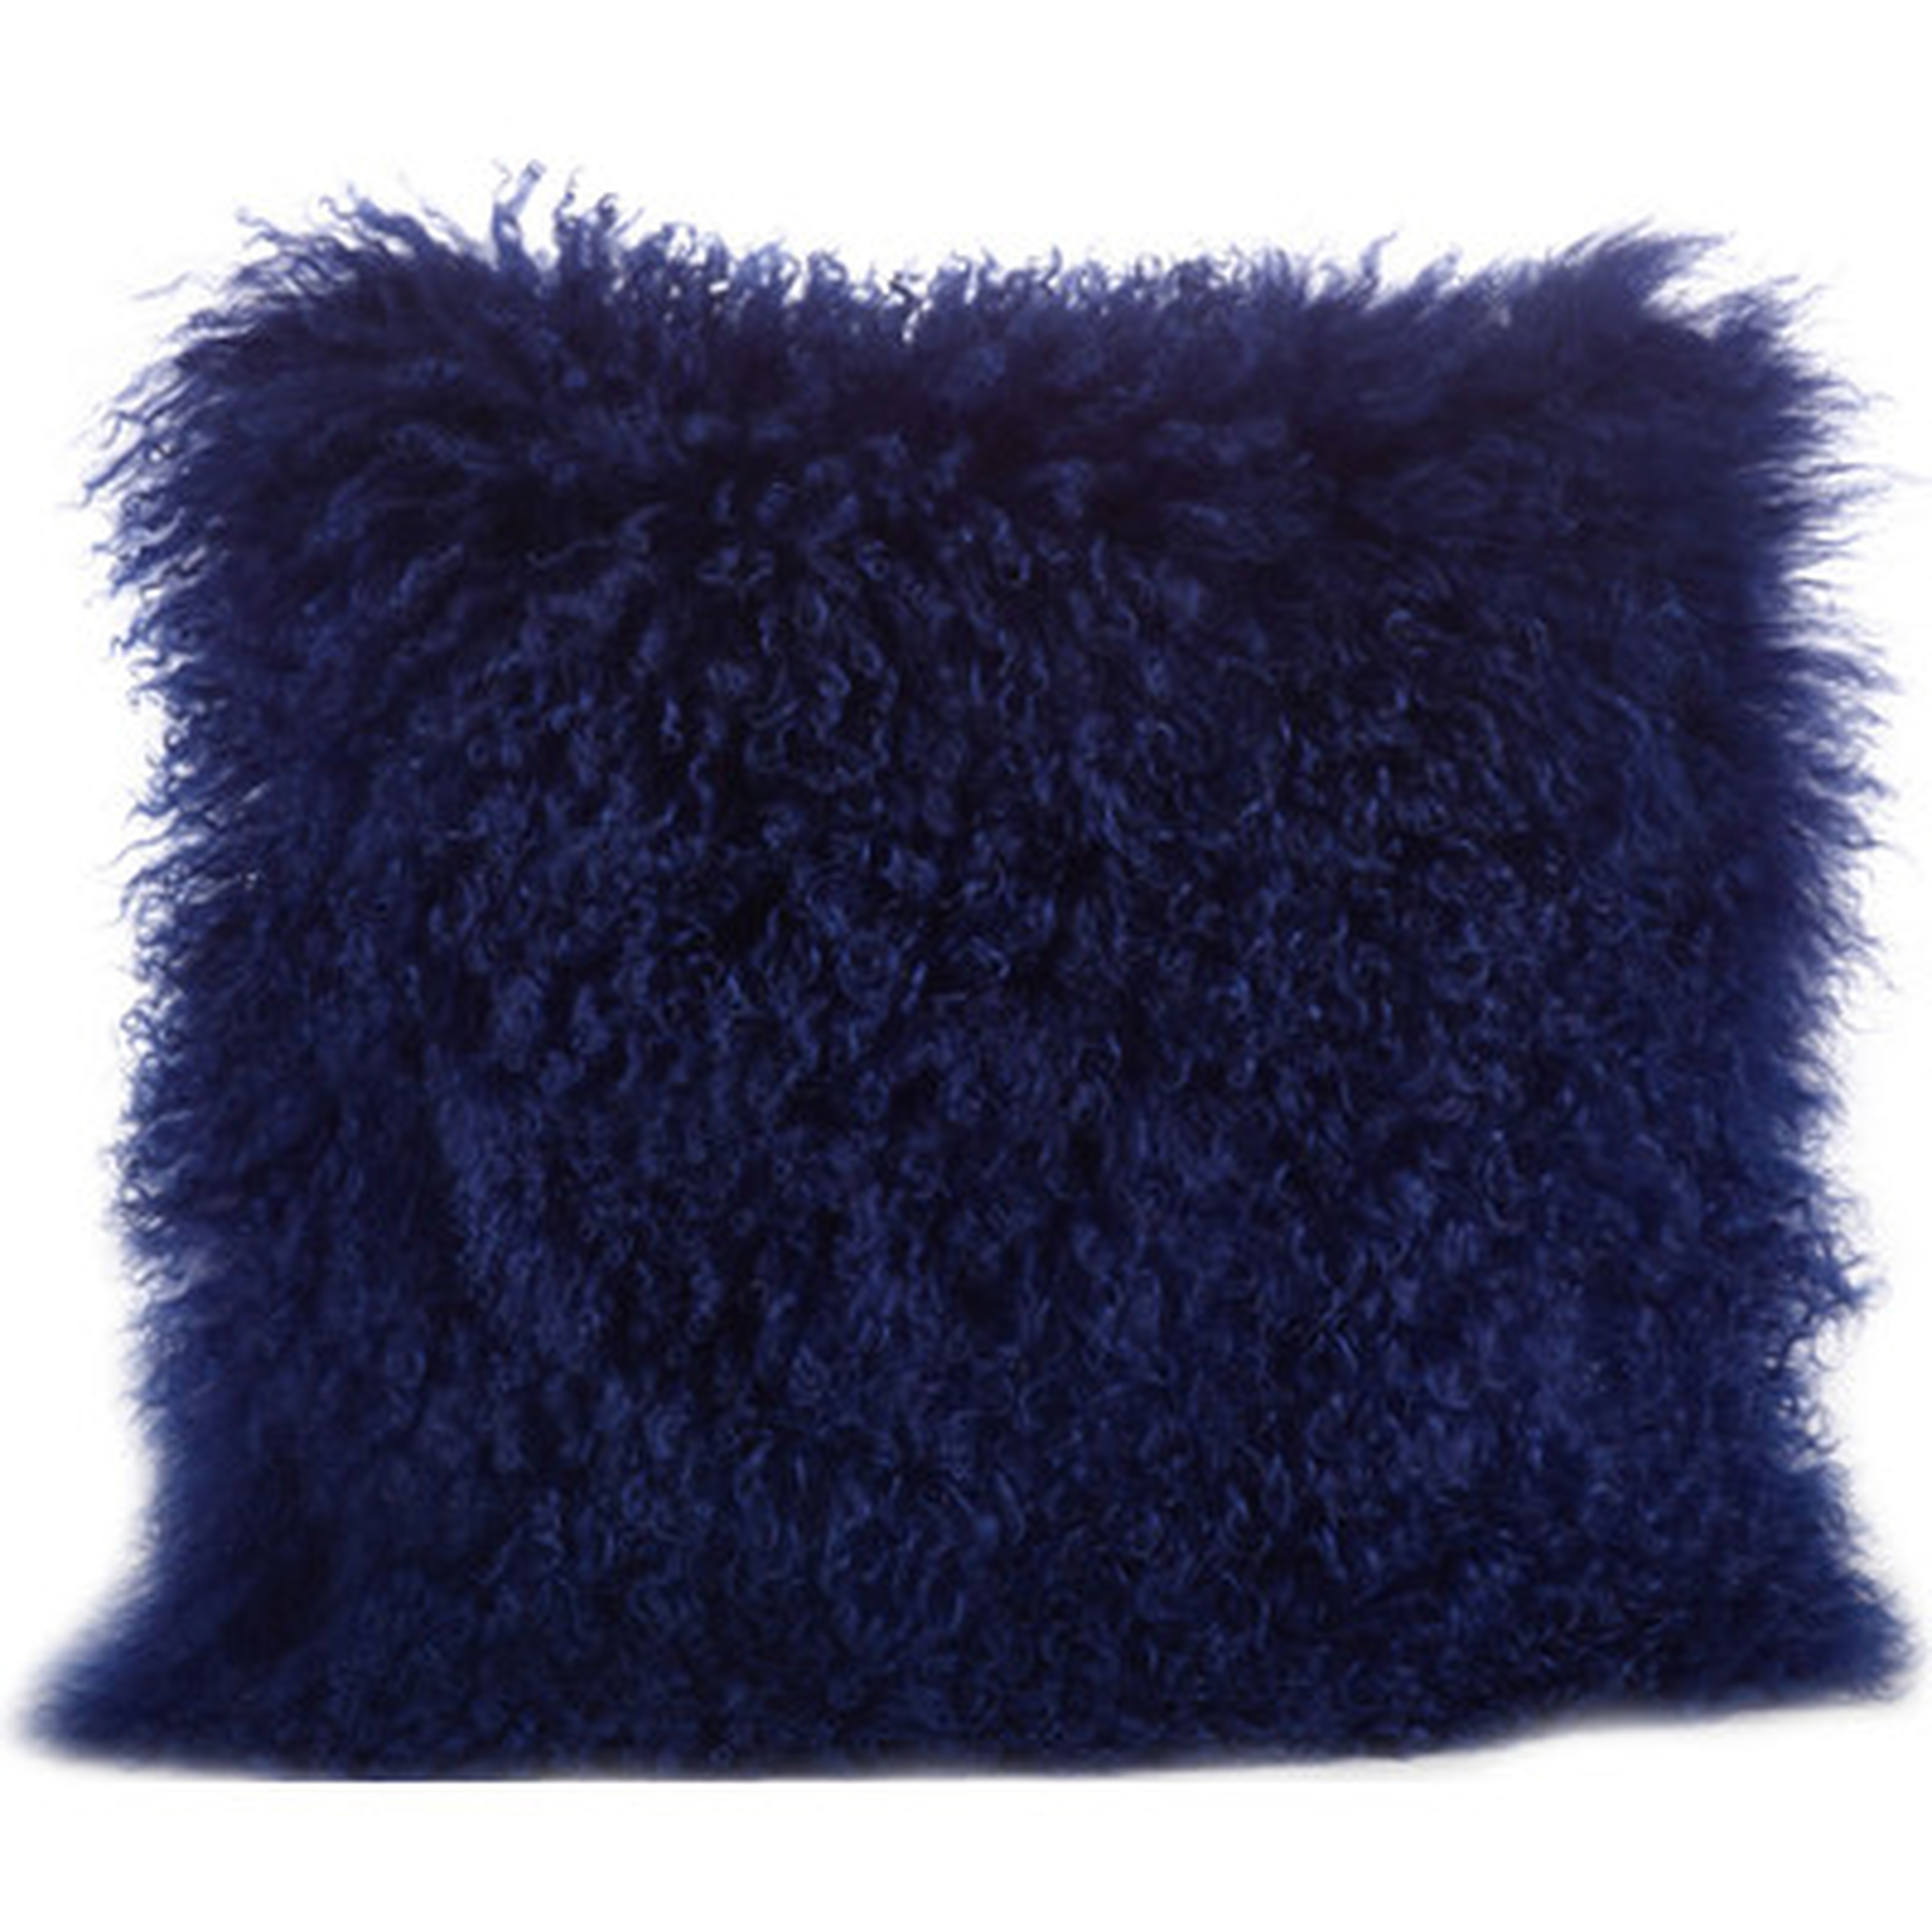 Becky Mongolian Lamb Fur Wool Throw Pillow - Cobalt Blue - 16" x 16" - With insert - Wayfair